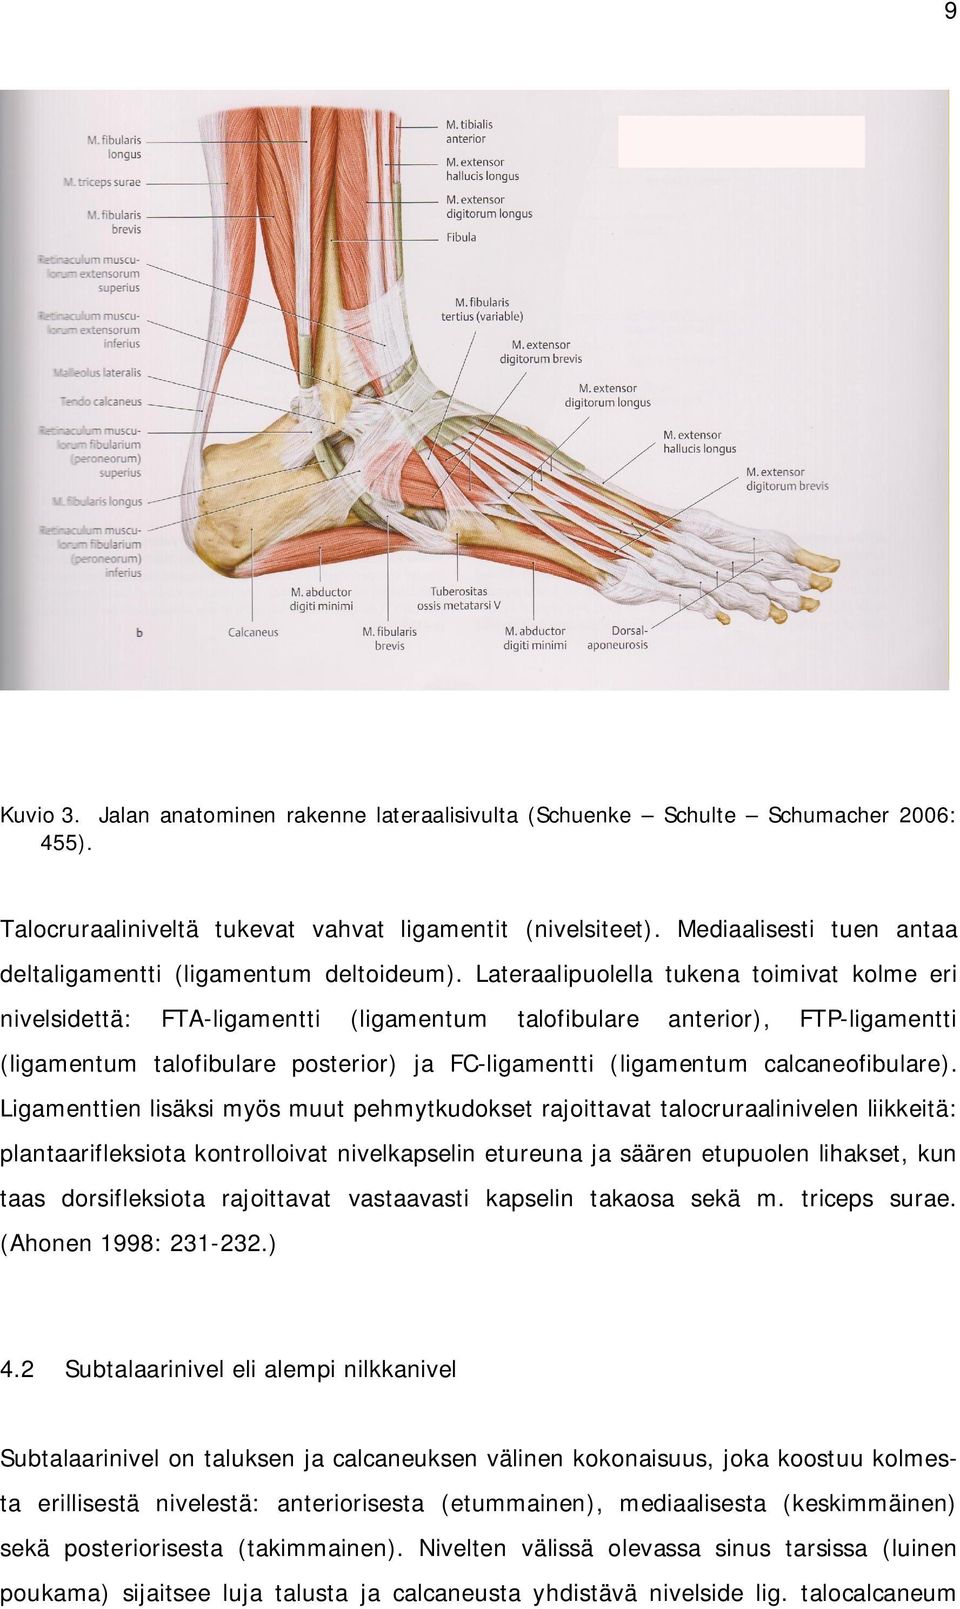 Lateraalipuolella tukena toimivat kolme eri nivelsidettä: FTA-ligamentti (ligamentum talofibulare anterior), FTP-ligamentti (ligamentum talofibulare posterior) ja FC-ligamentti (ligamentum